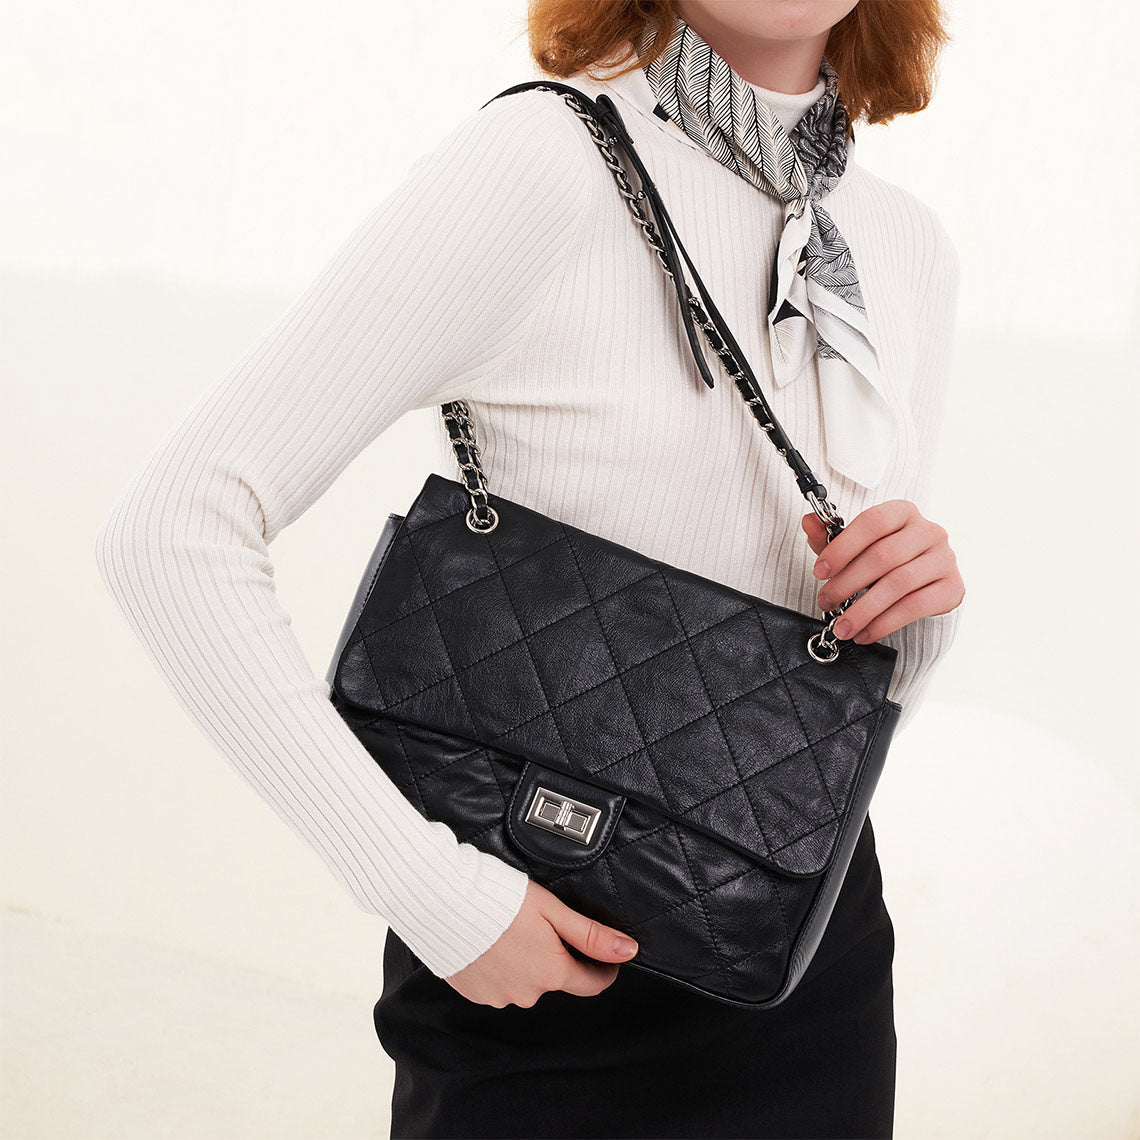 Black Leather Flap Shoulder Bag for Women - POPSEWING™